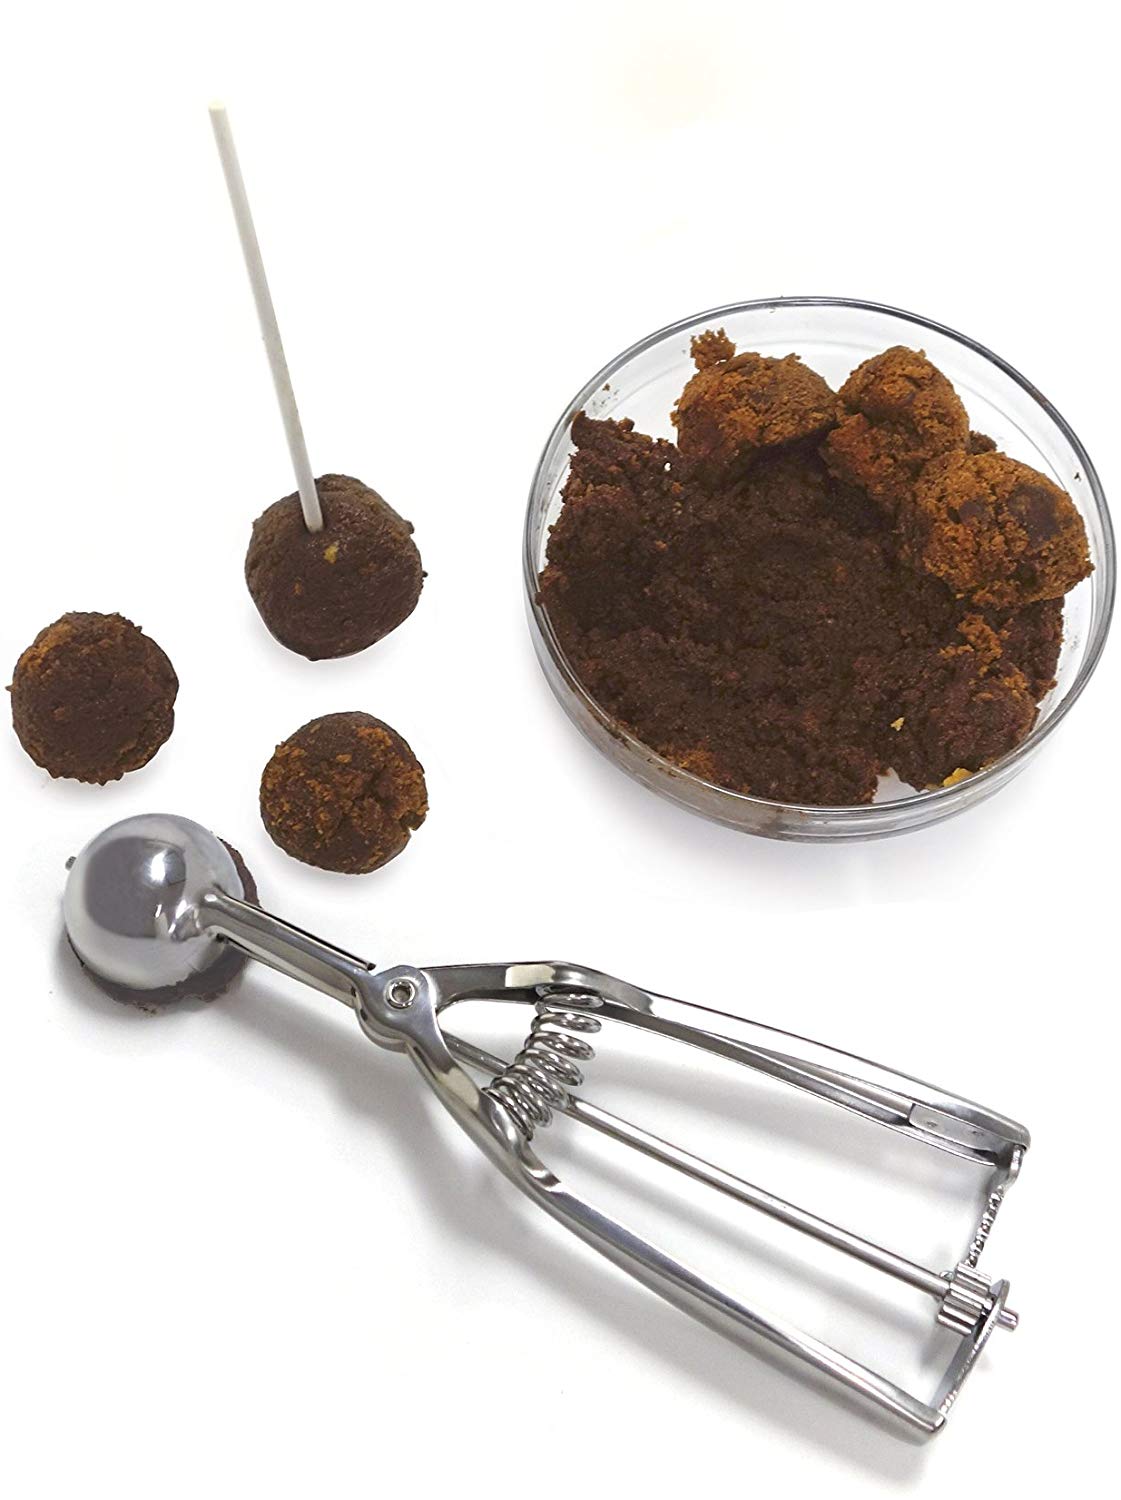 Cookie/Meatball Scoop - Norpro